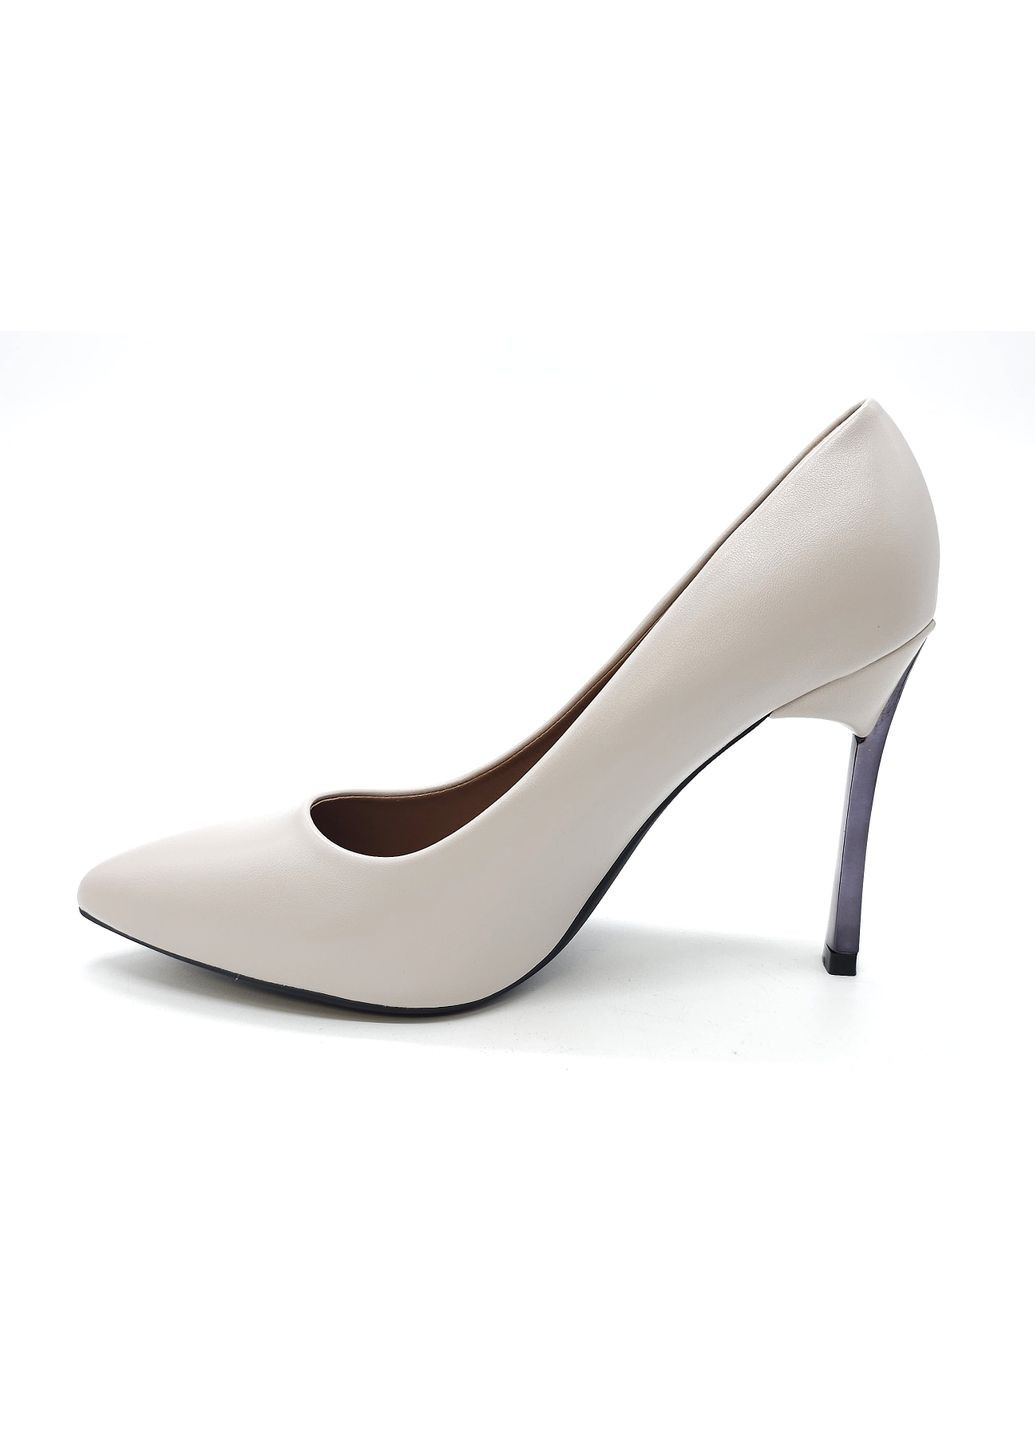 Жіночі туфлі сірі екошкіра MD-16-7 24,5 см (р) Mei De Li (260061006)